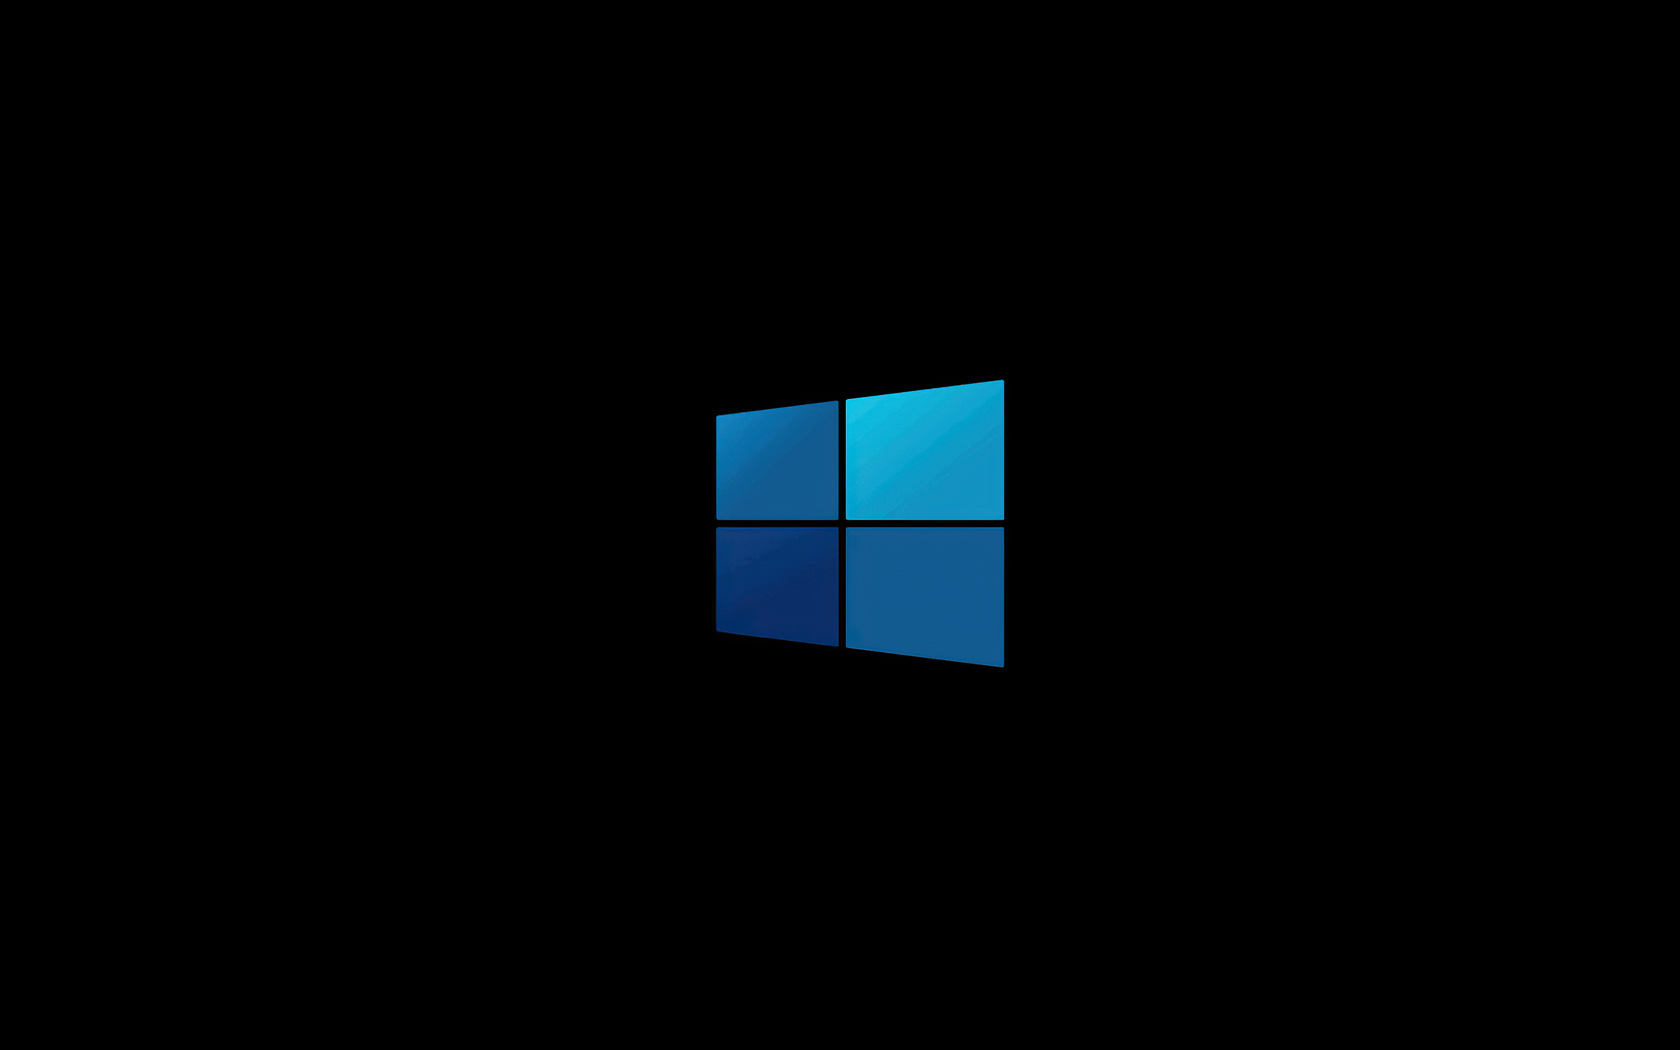 Windows 10 Clean Dark Background